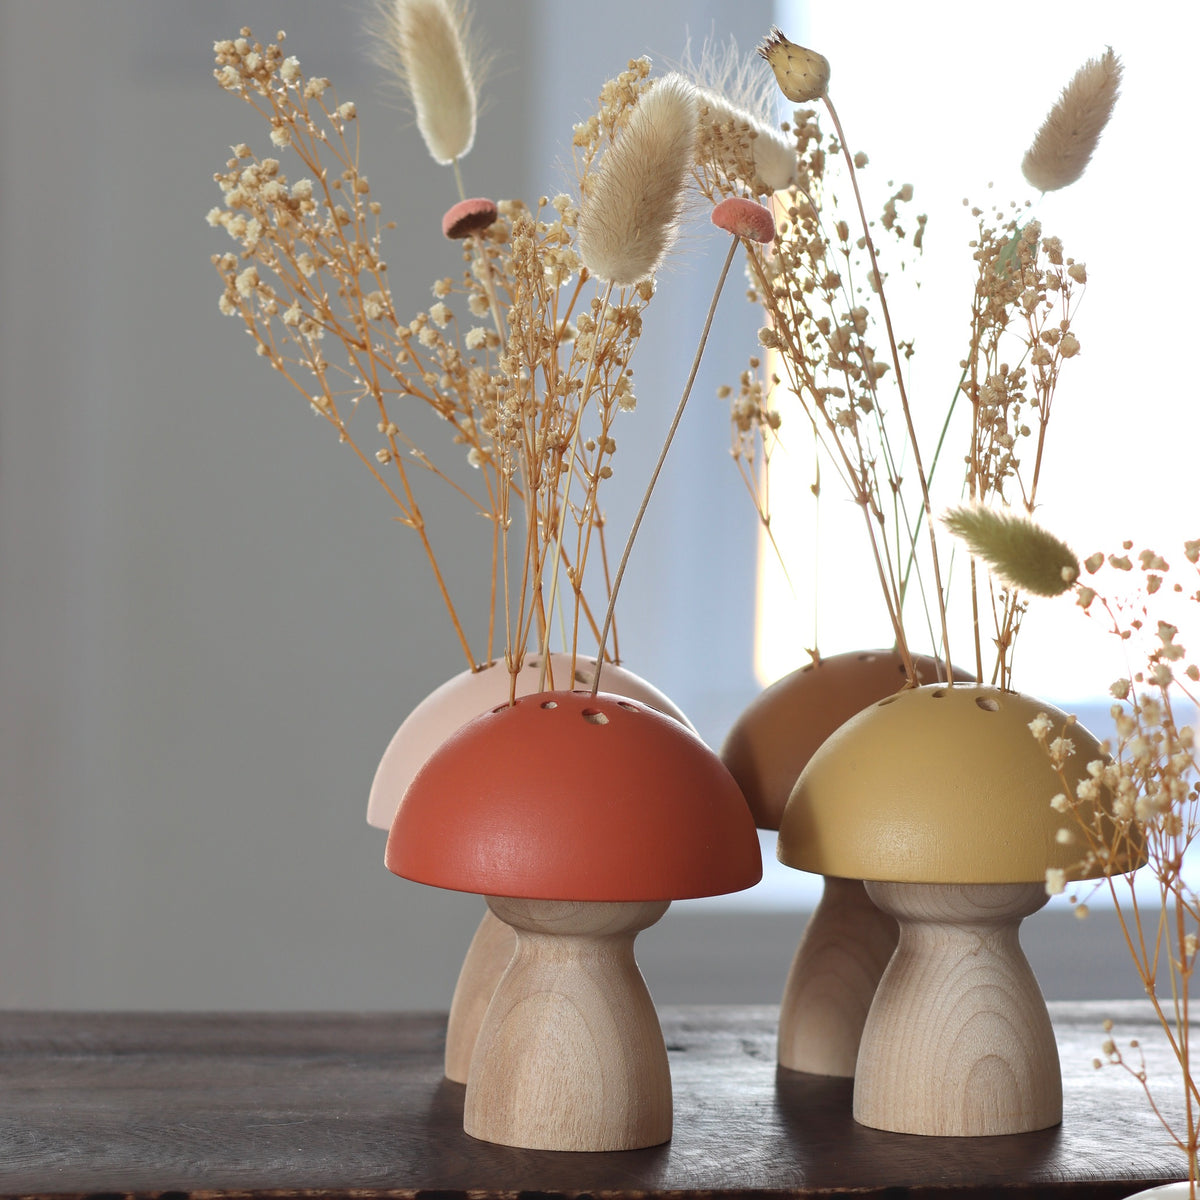 Hand-Painted Wooden Mushroom Vase - Mustard - Holistic Habitat 